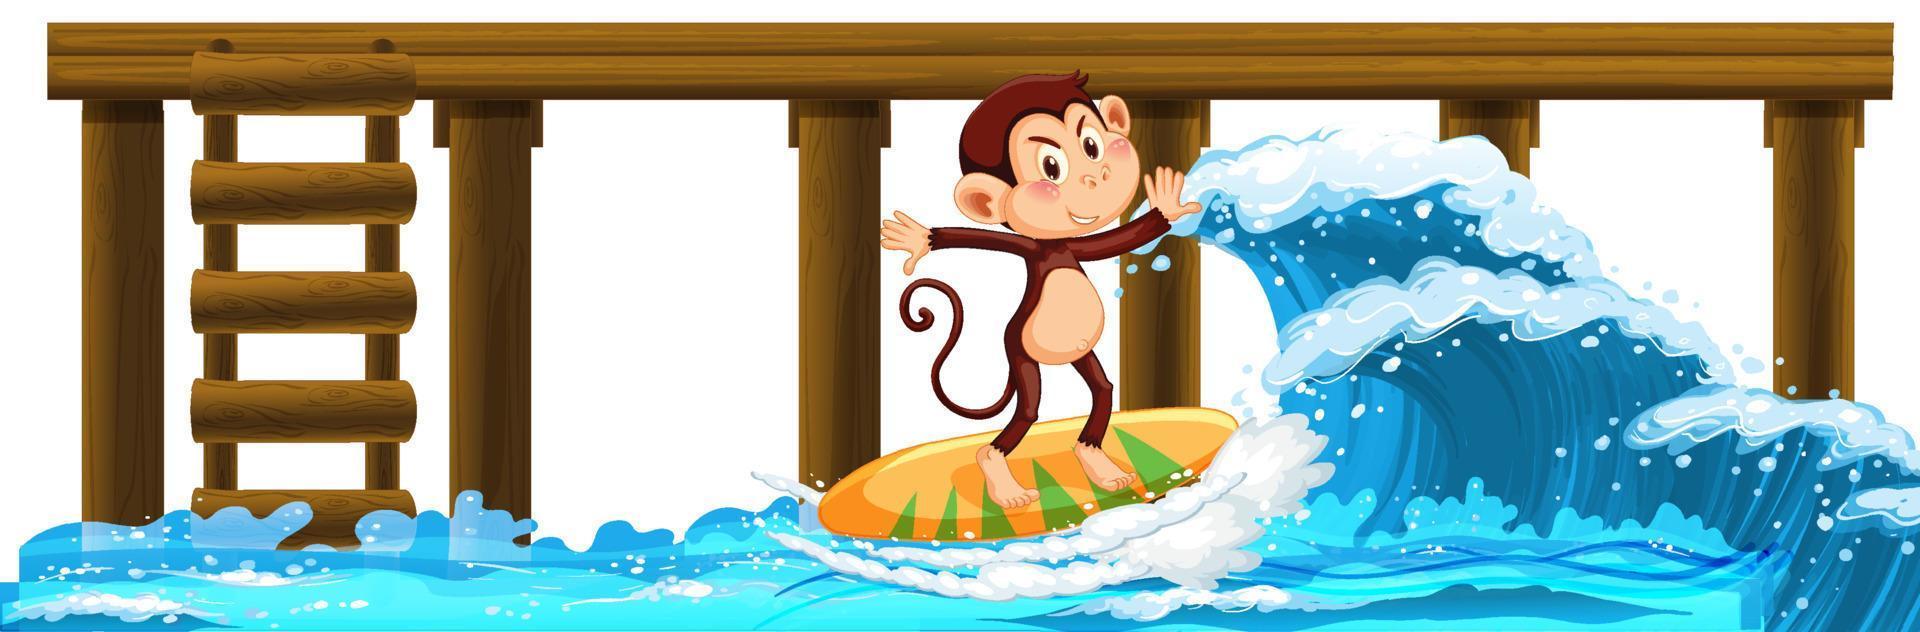 Affe auf Surfbrett mit Wasserwellen vektor